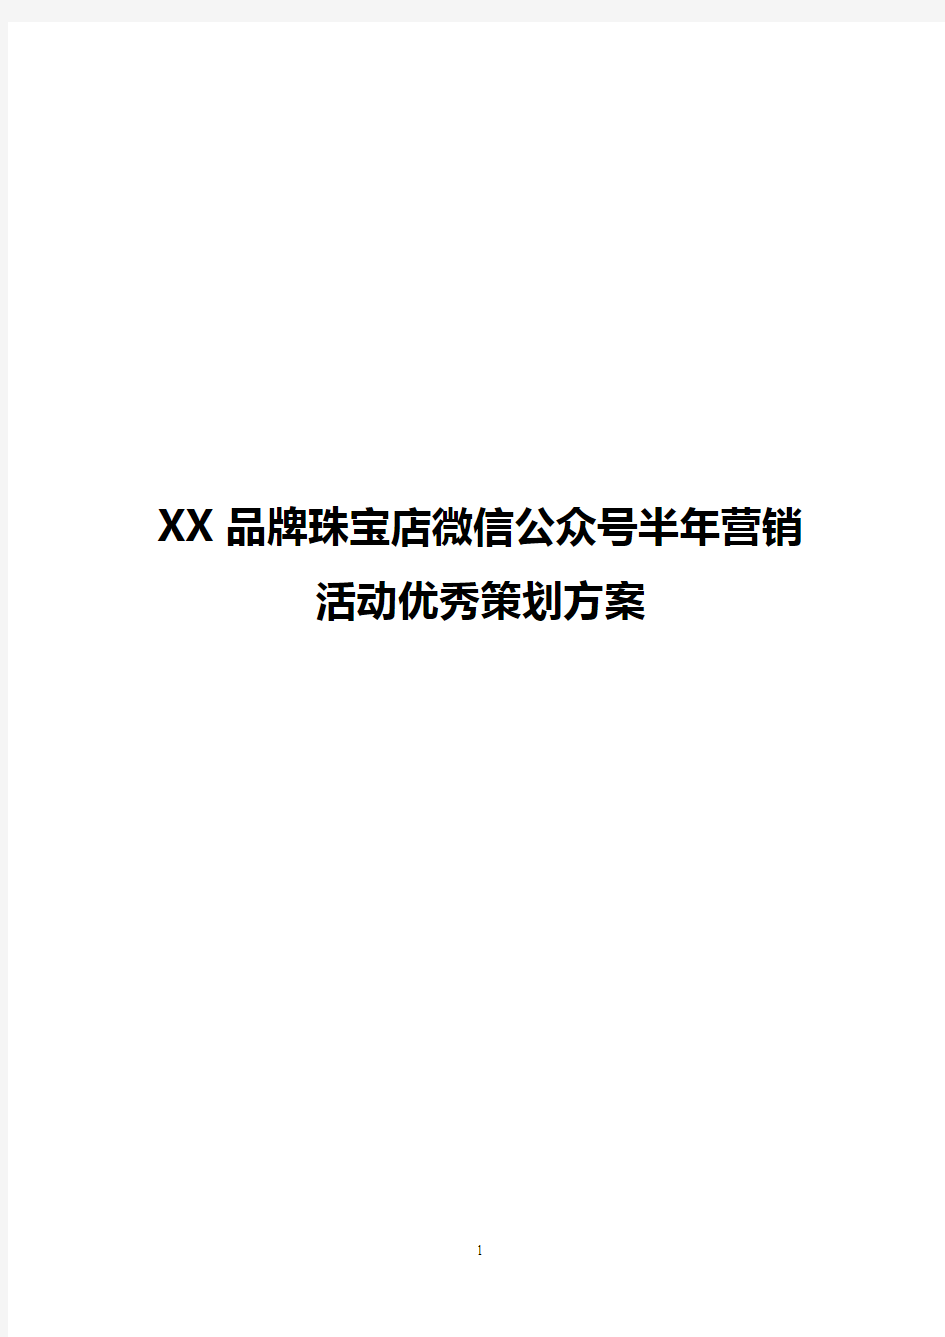 【完稿】XX品牌珠宝店微信公众号半年营销活动优秀策划方案